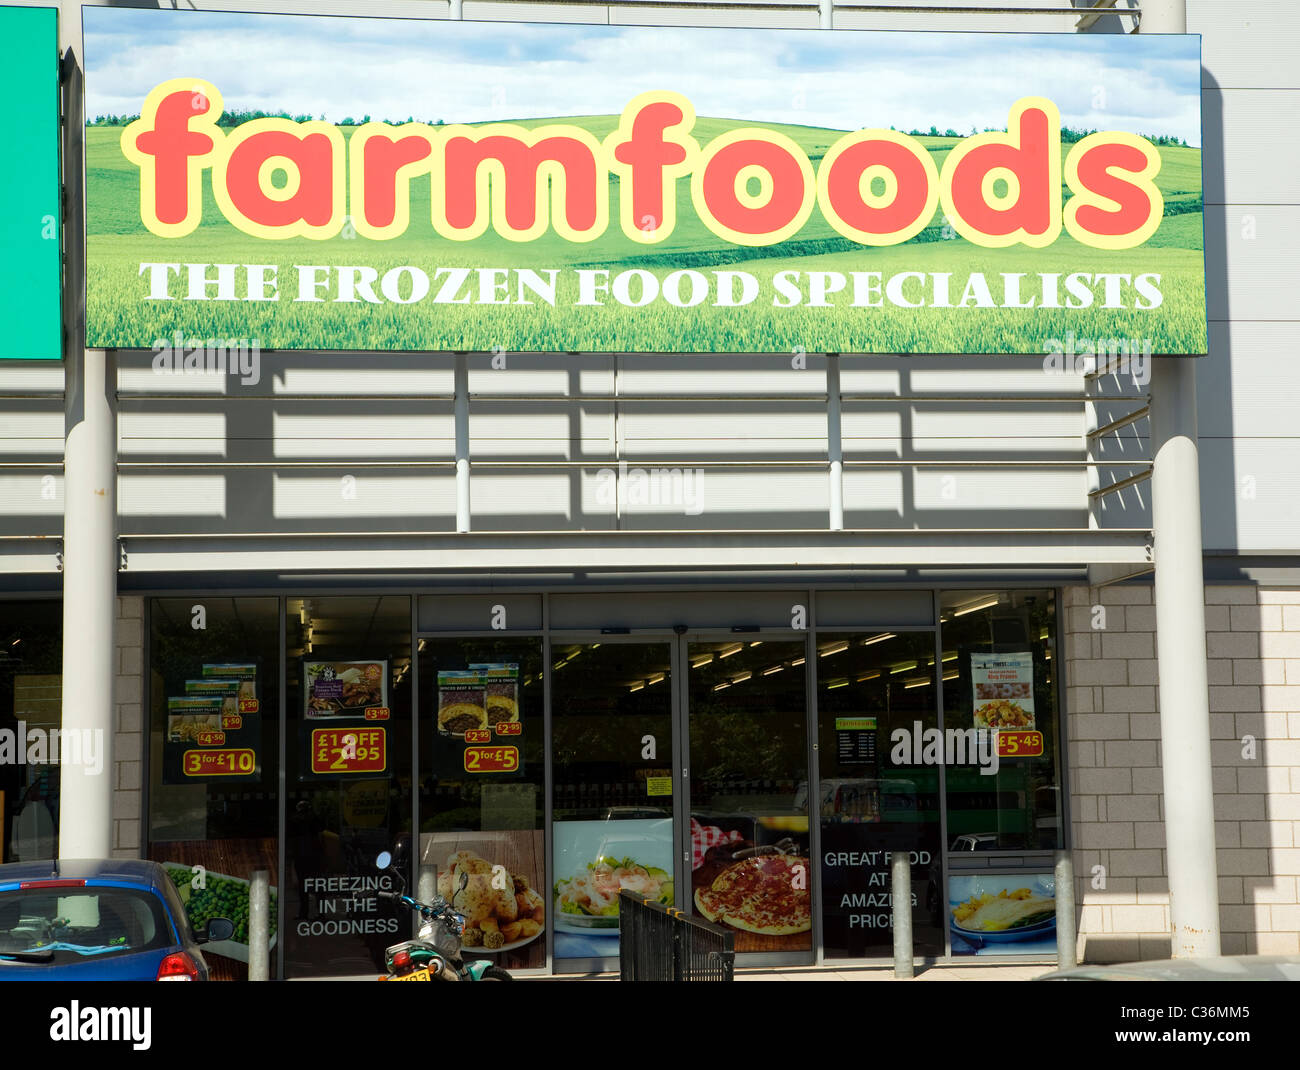 Farmfoods List Of Frozen Foods